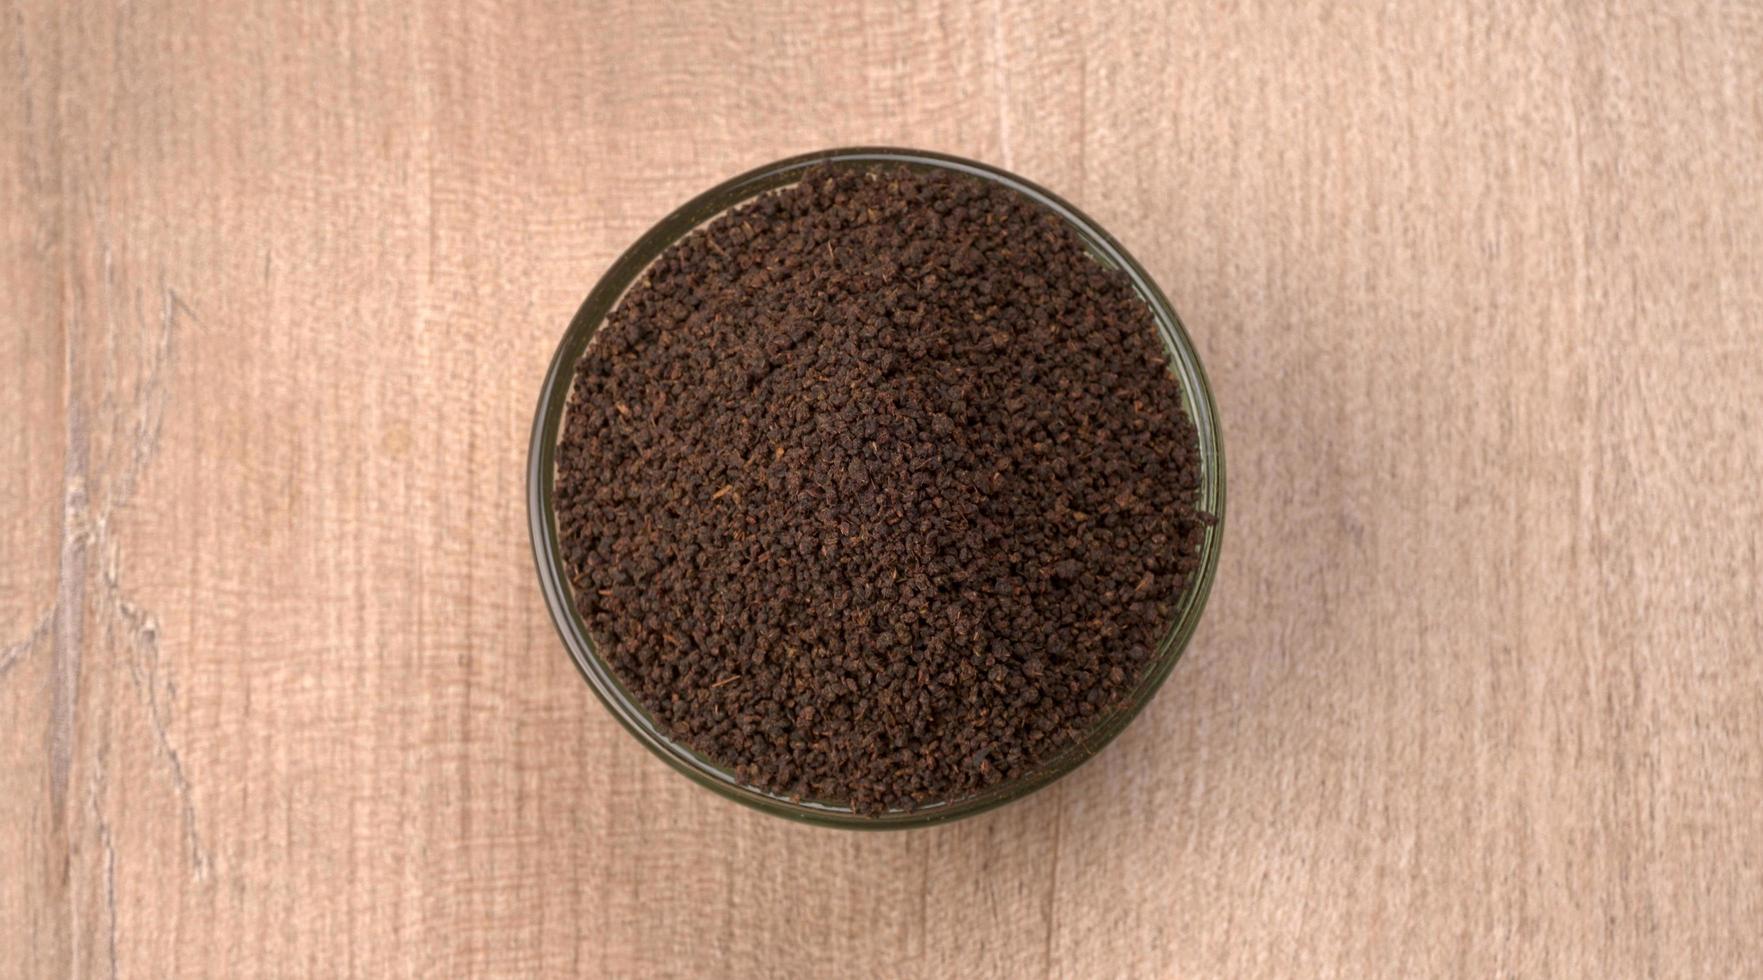 pó de chá preto ou pó de chá seco em pó, chai patti isolado em uma tigela de madeira. foto